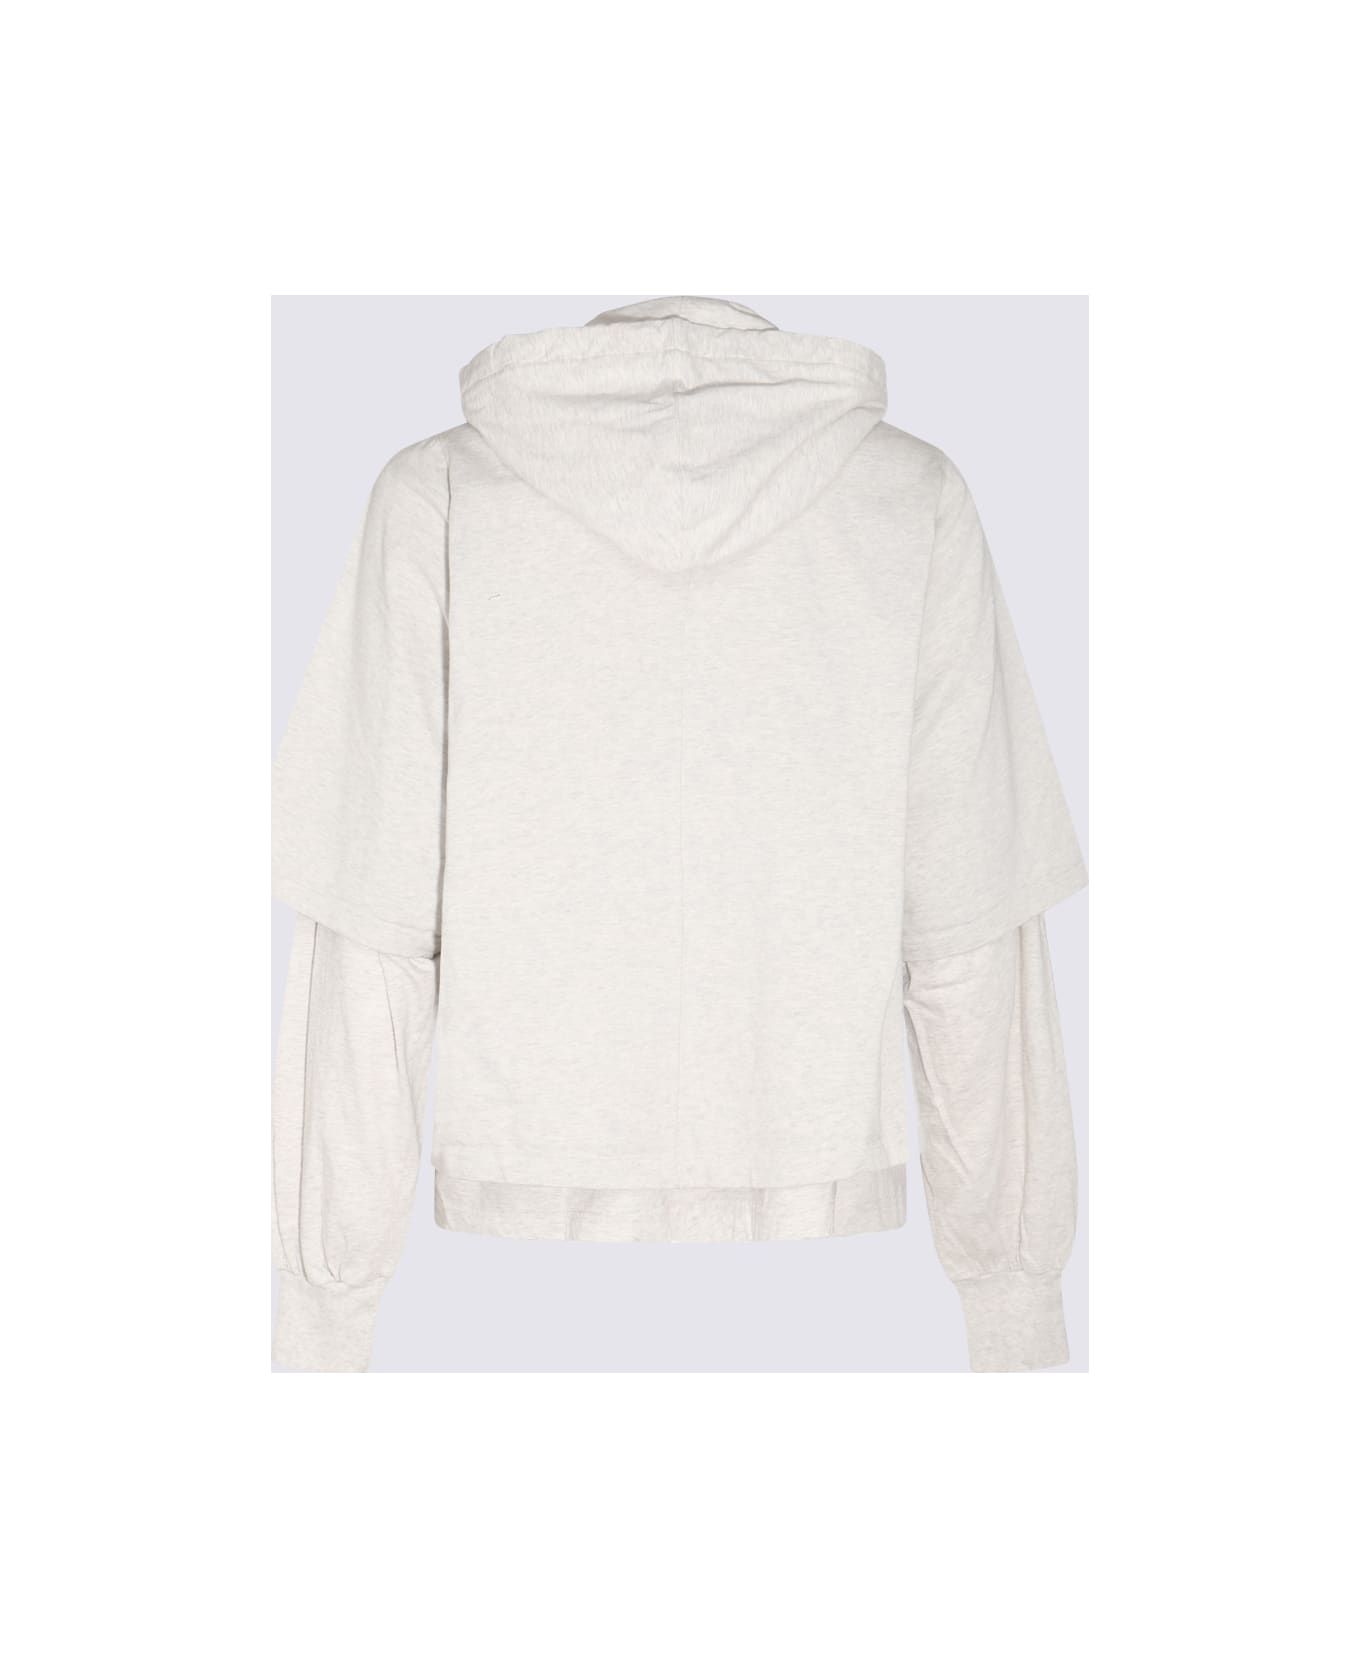 DRKSHDW Grey Cotton Sweatshirt - Grey フリース